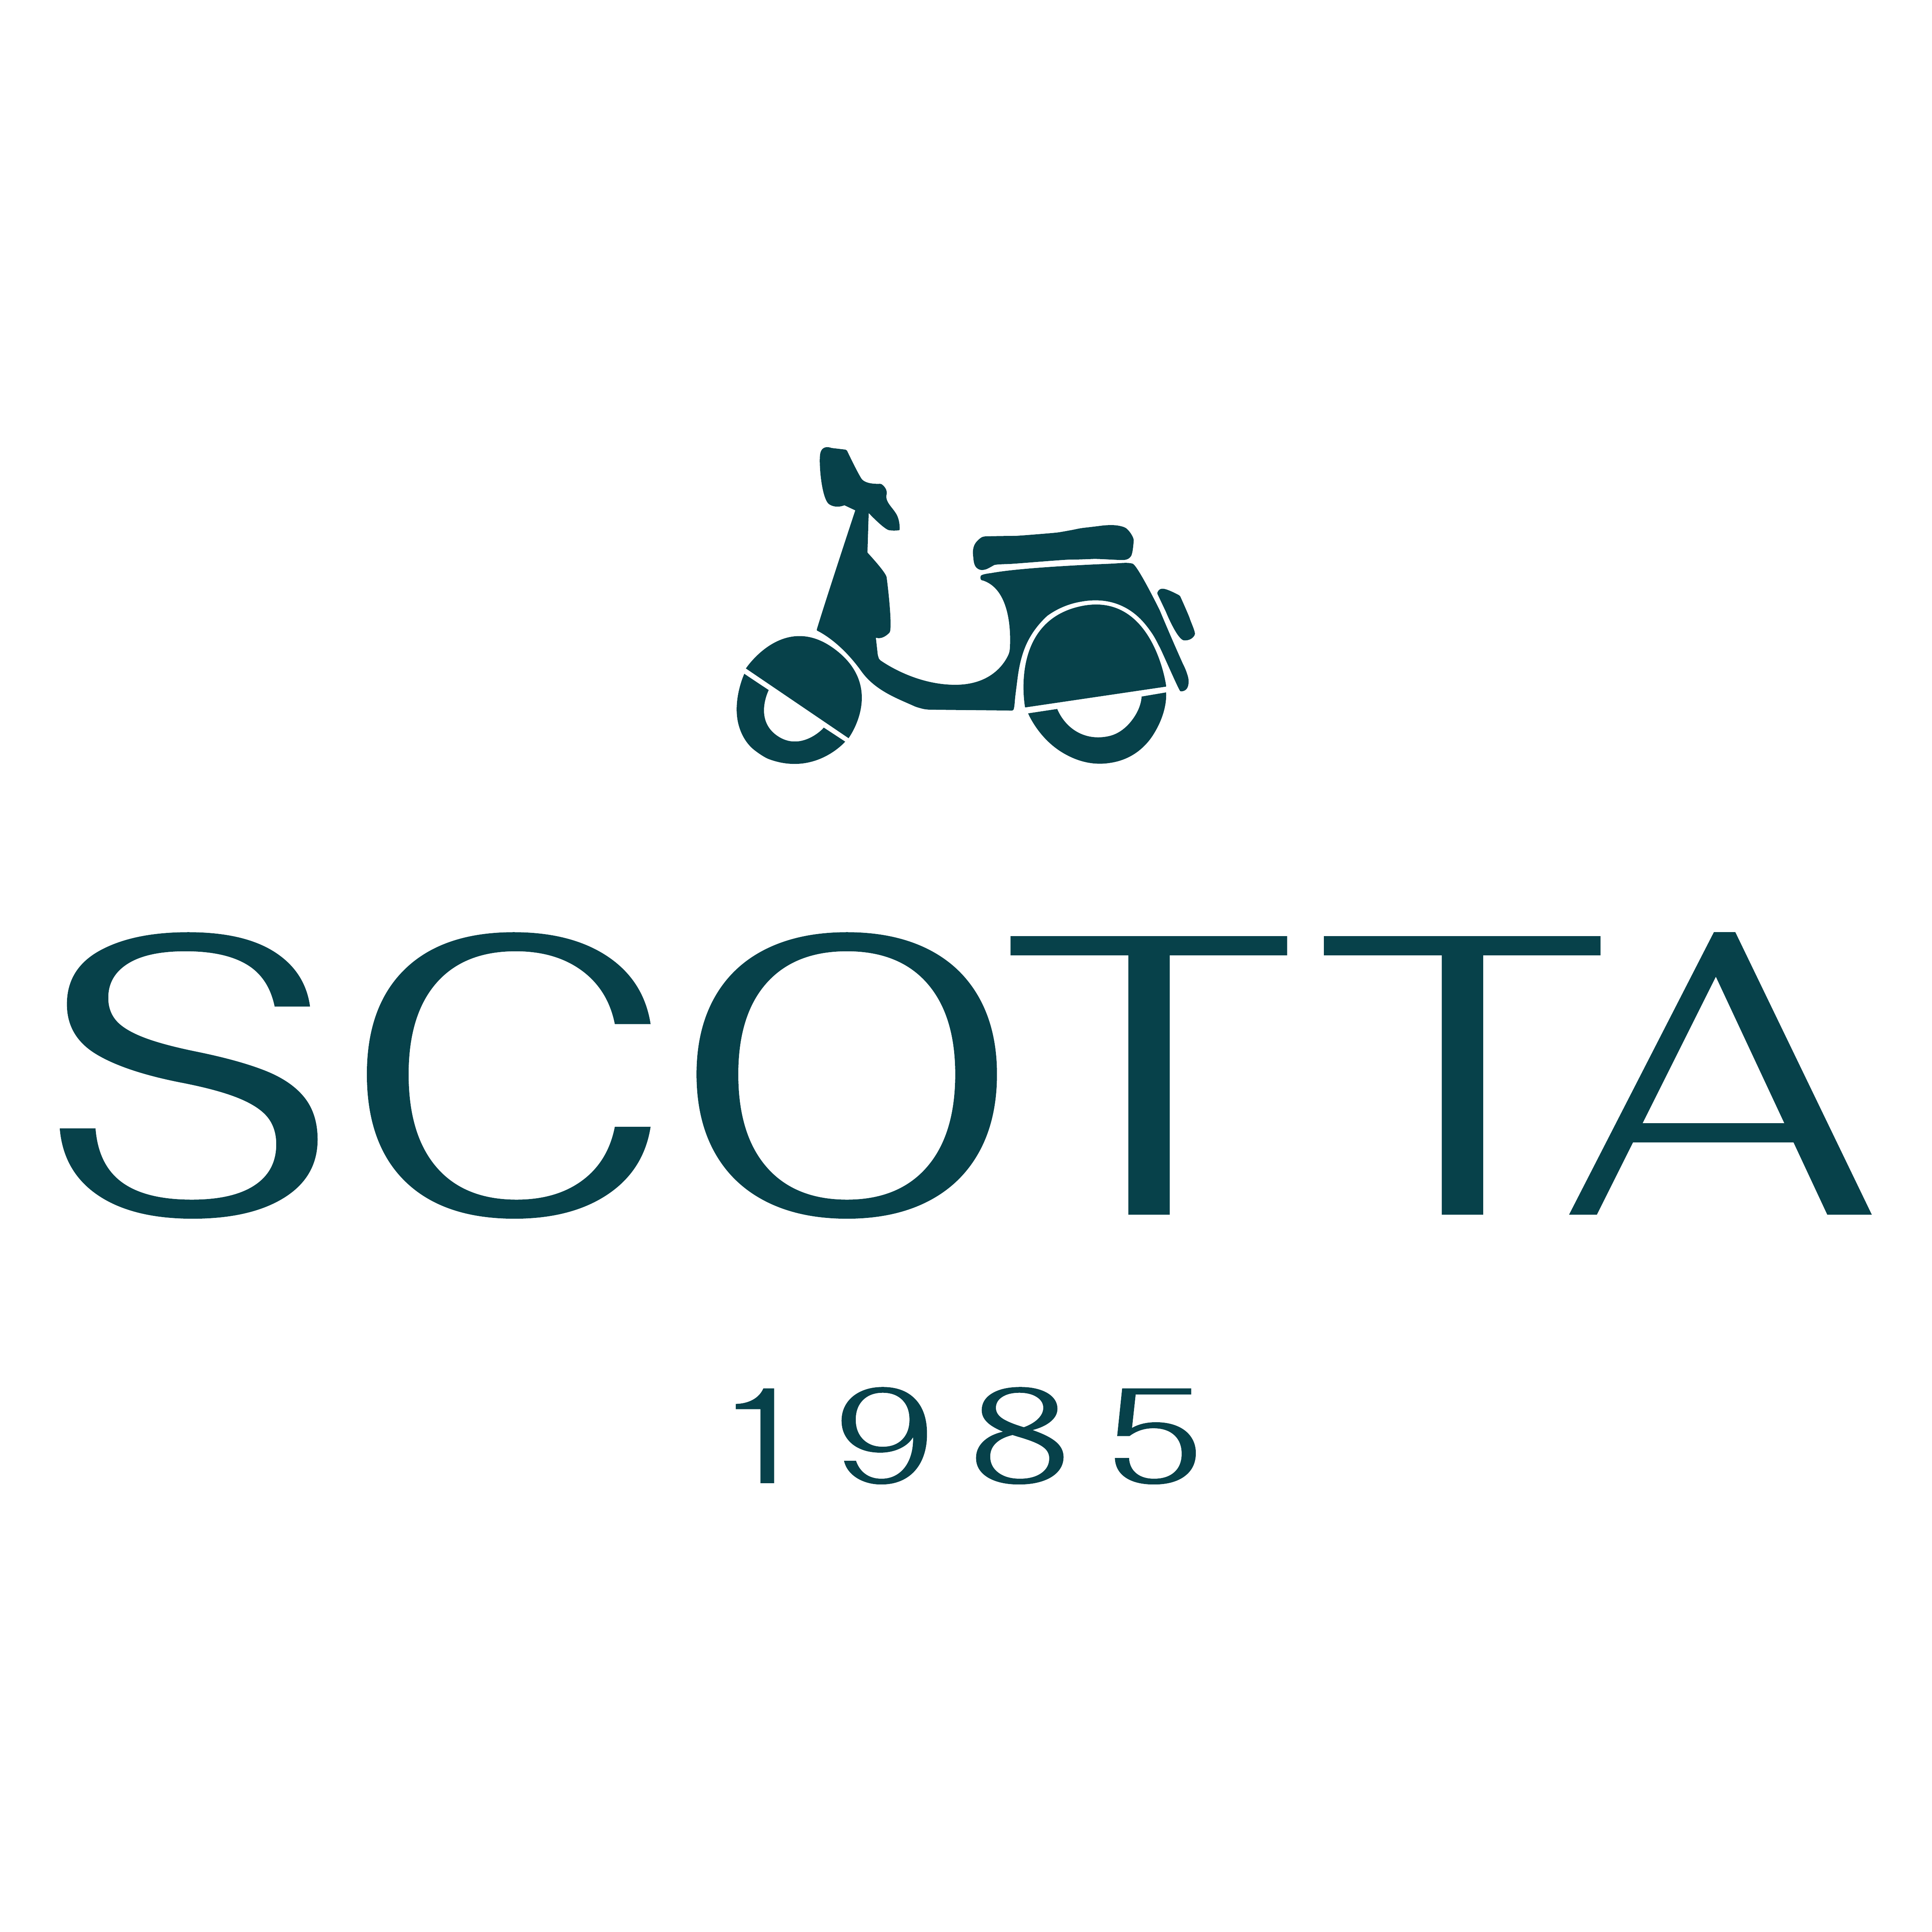 Scotta 1985 logo